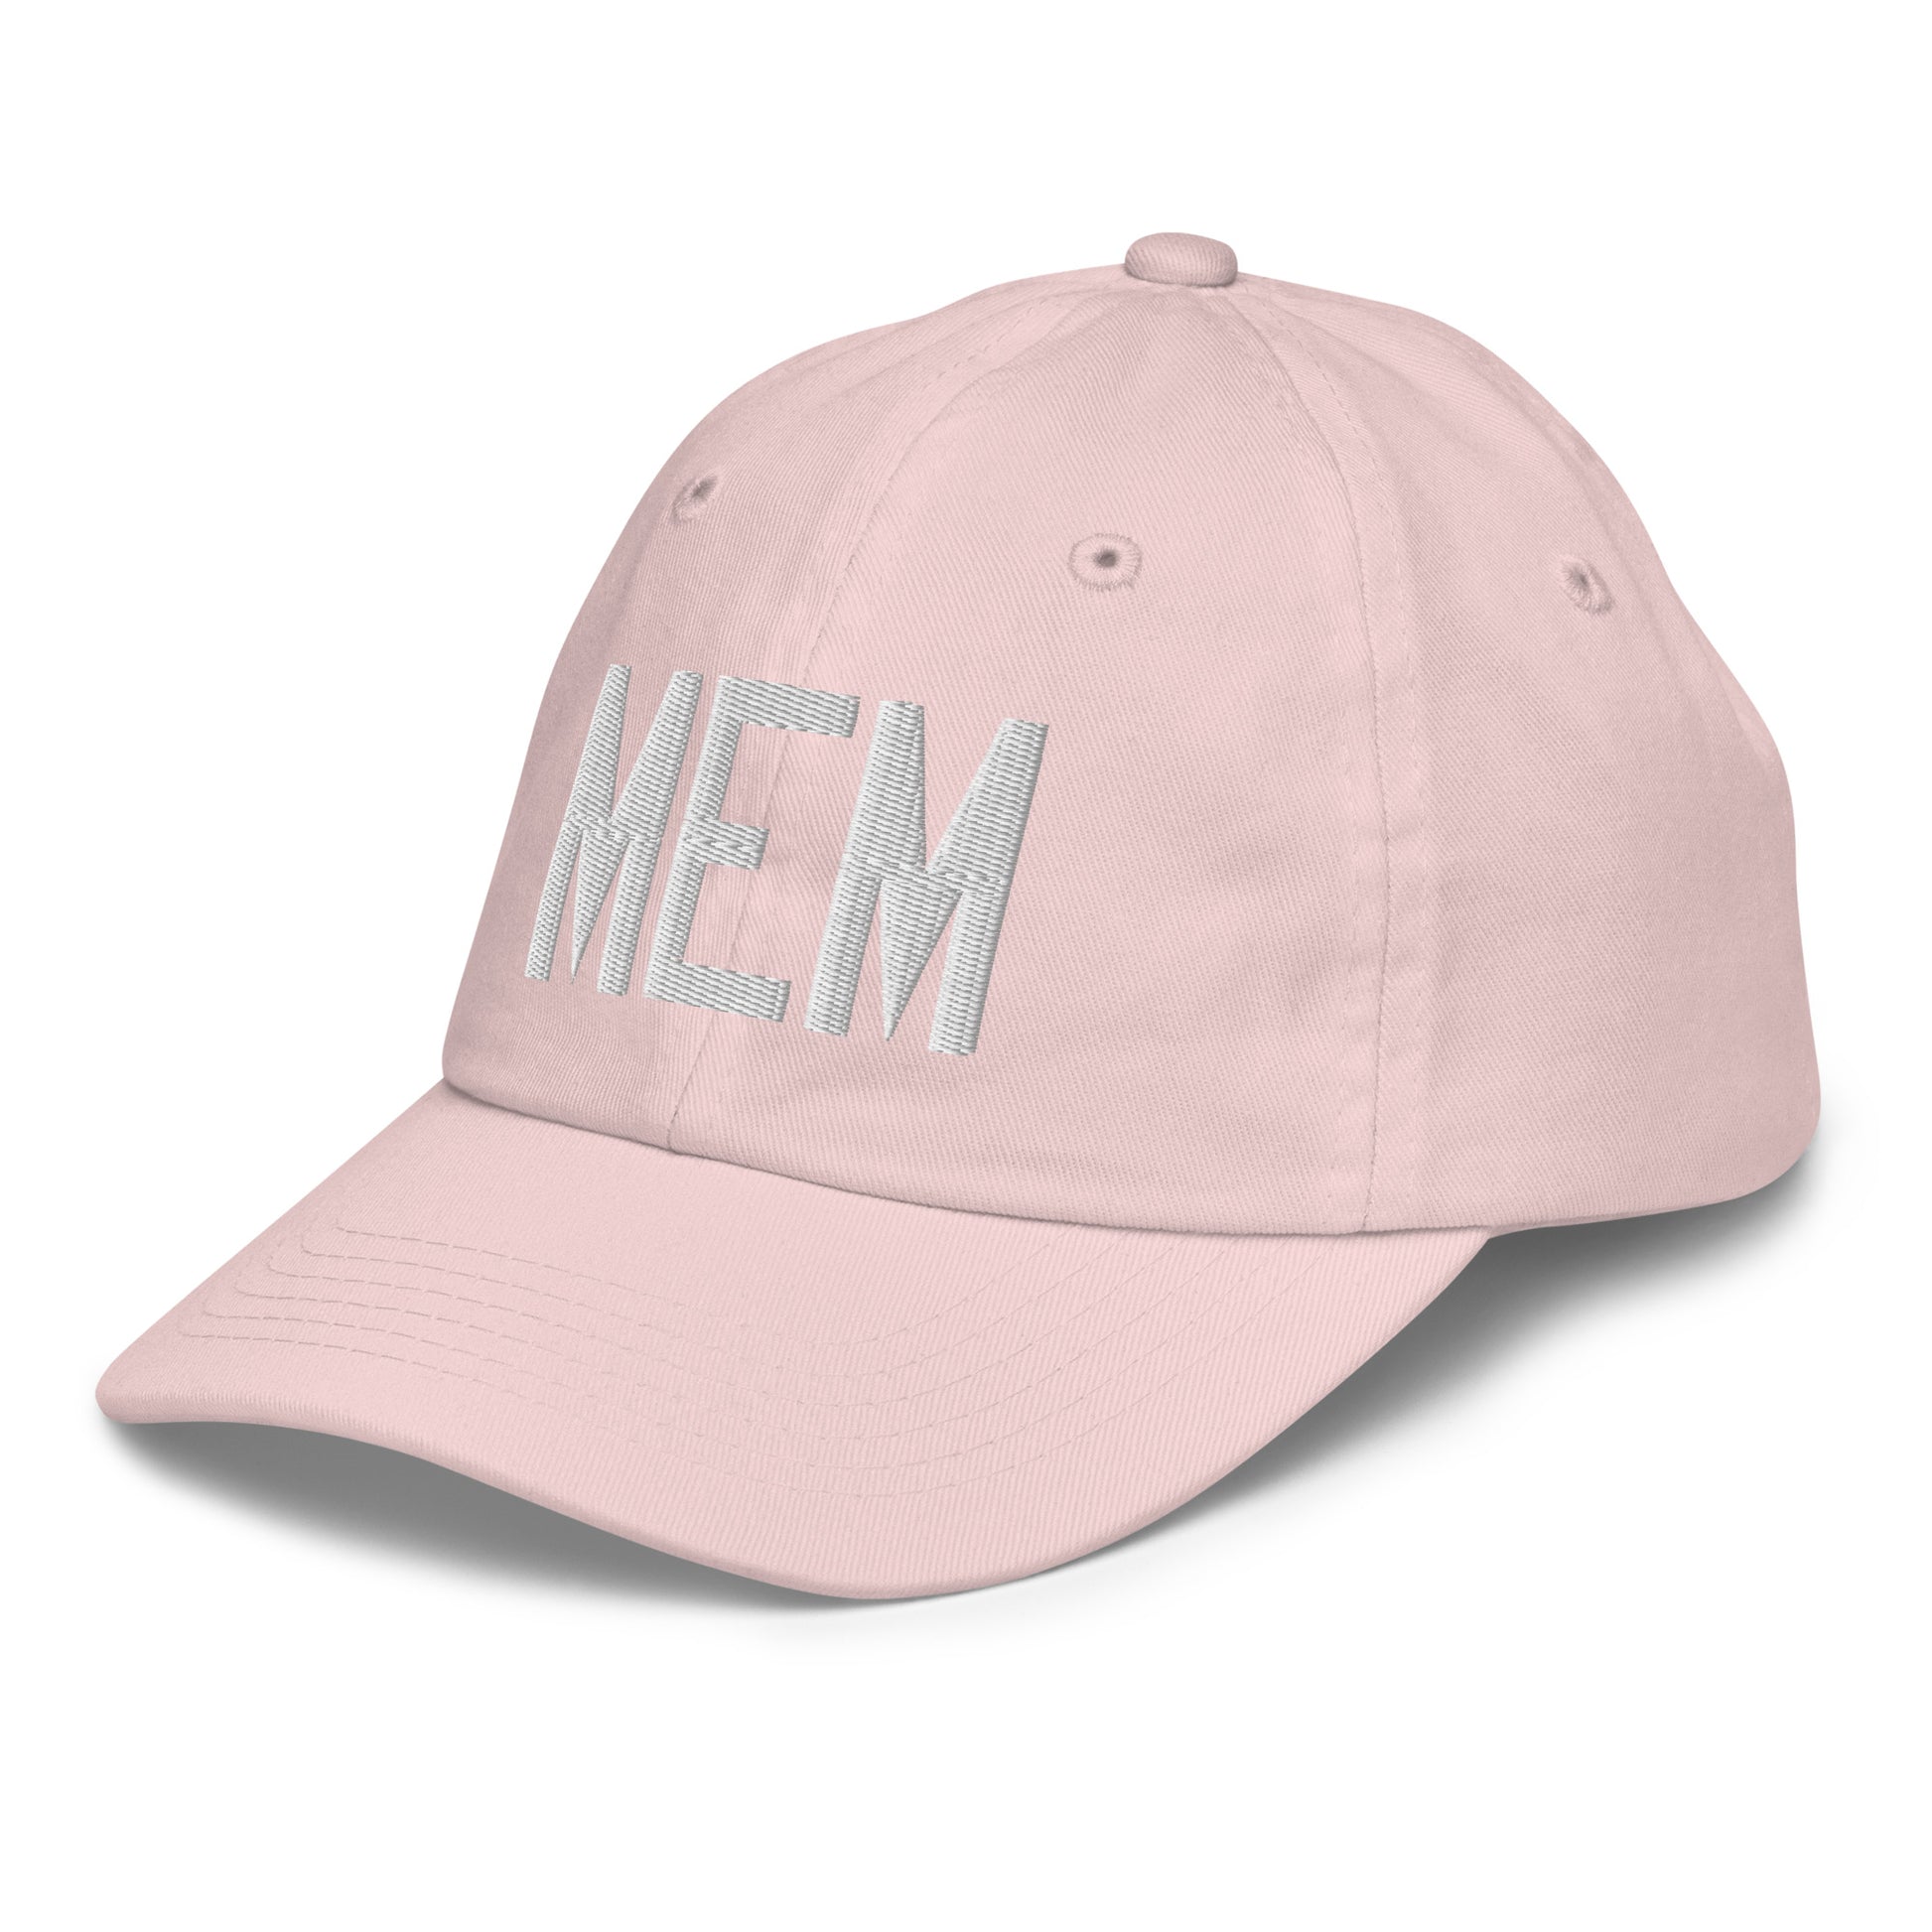 Airport Code Kid's Baseball Cap - White • MEM Memphis • YHM Designs - Image 33